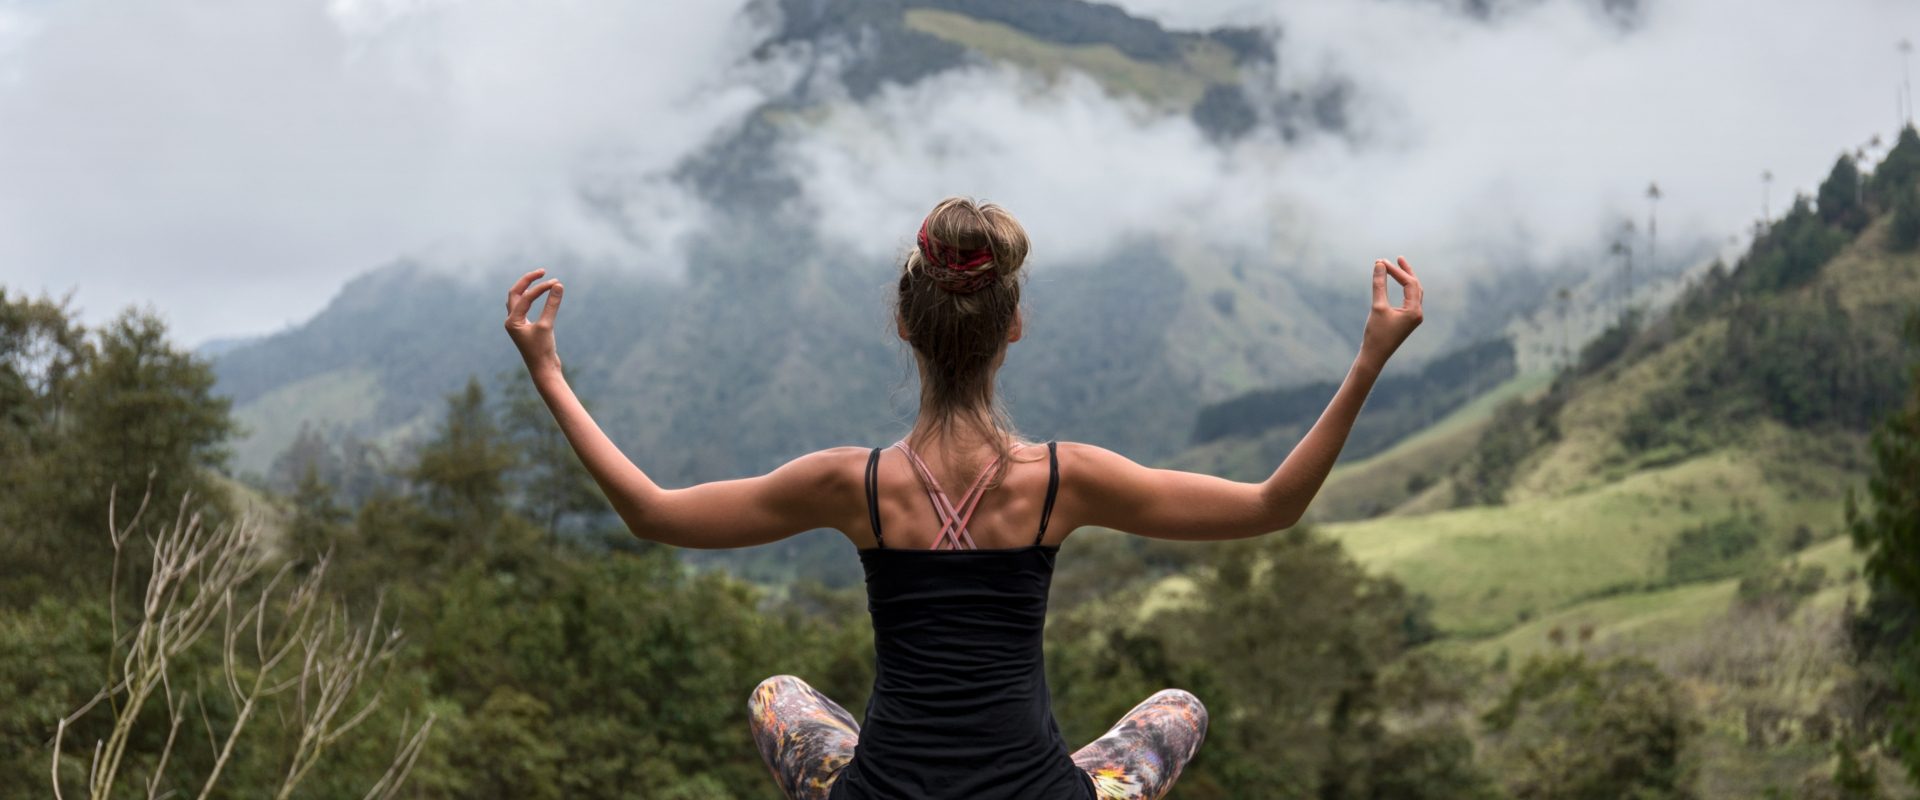 Jak ulepszyć praktykę jogi? Młoda wysportowana kobieta medytuje w górach.